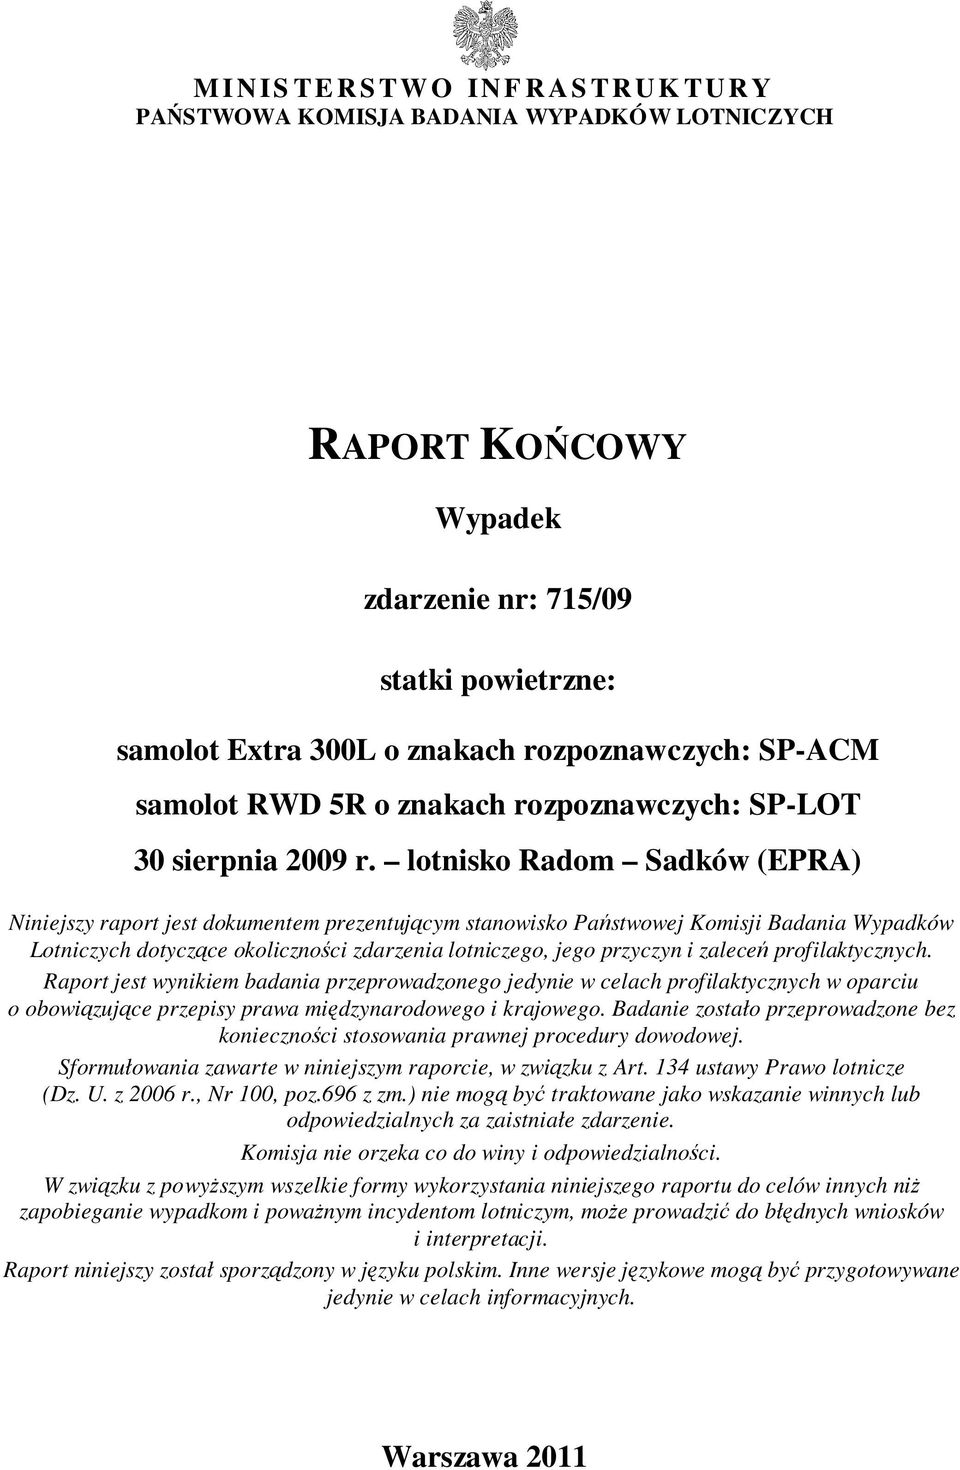 lotnisko Radom Sadków (EPRA) Niniejszy raport jest dokumentem prezentującym stanowisko Państwowej Komisji Badania Wypadków Lotniczych dotyczące okoliczności zdarzenia lotniczego, jego przyczyn i